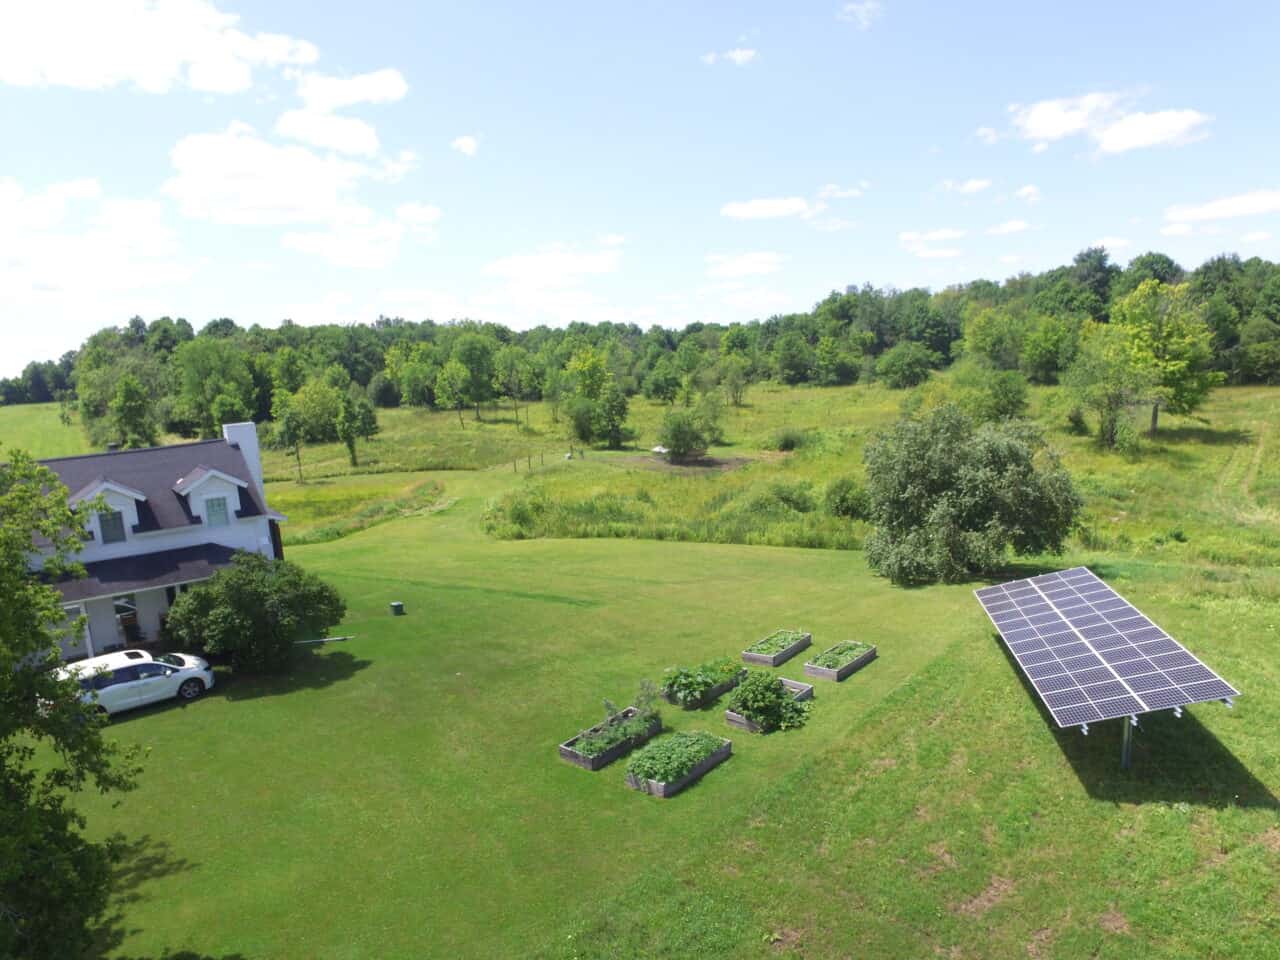 RaVolt Solar Panel on a Farm